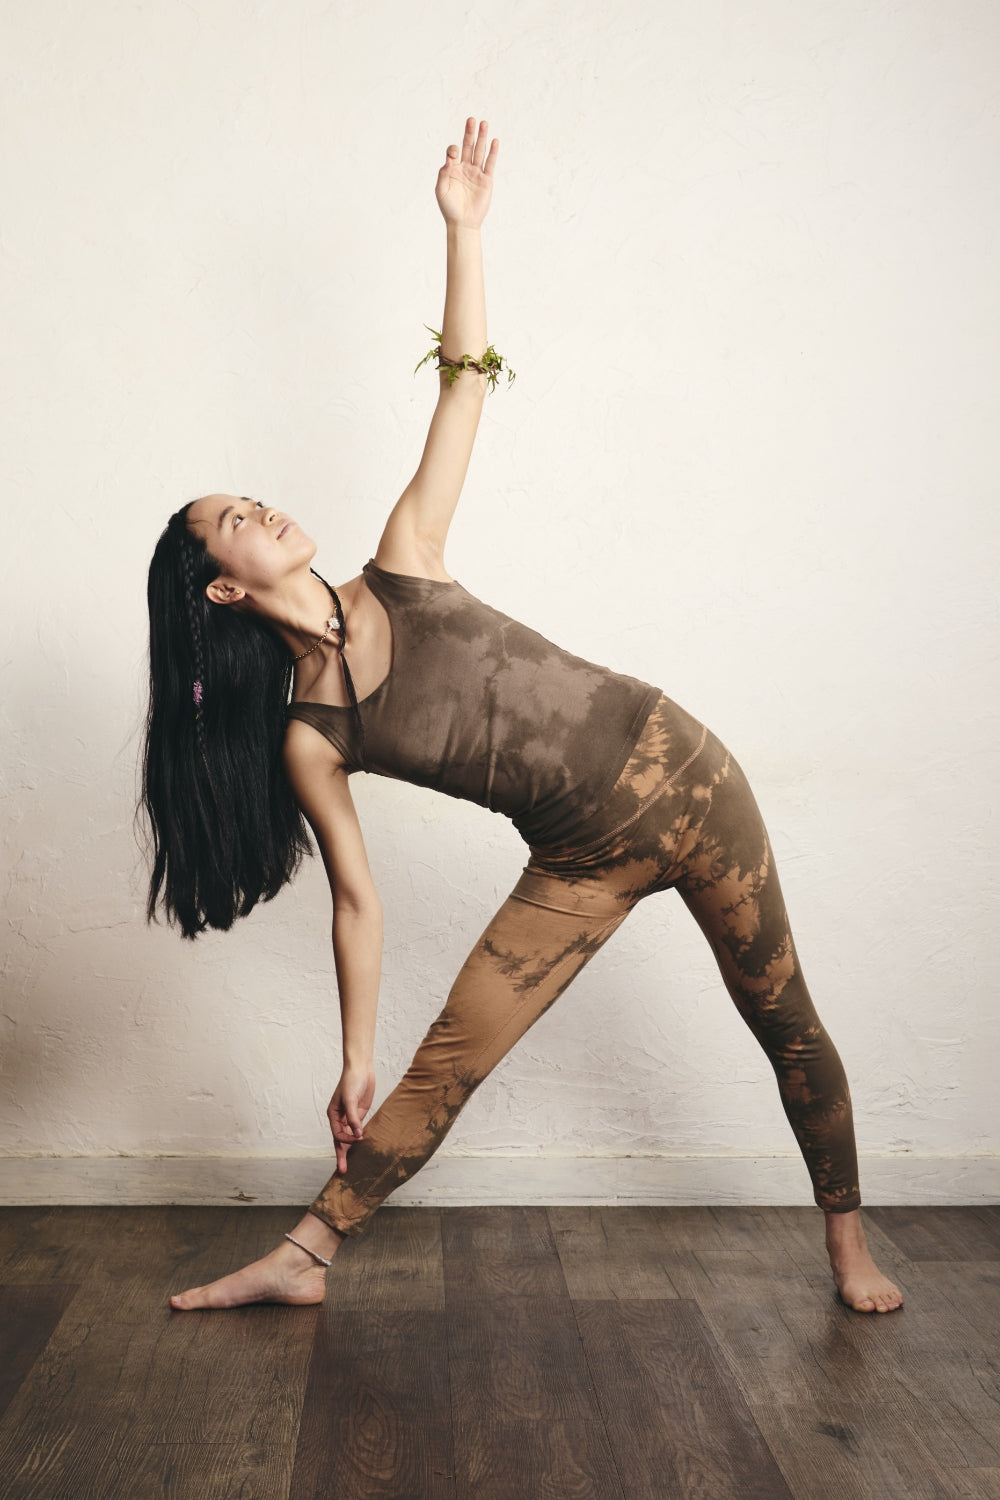 シームレスカプリレギンス – yinyang - yoga & meditation wear